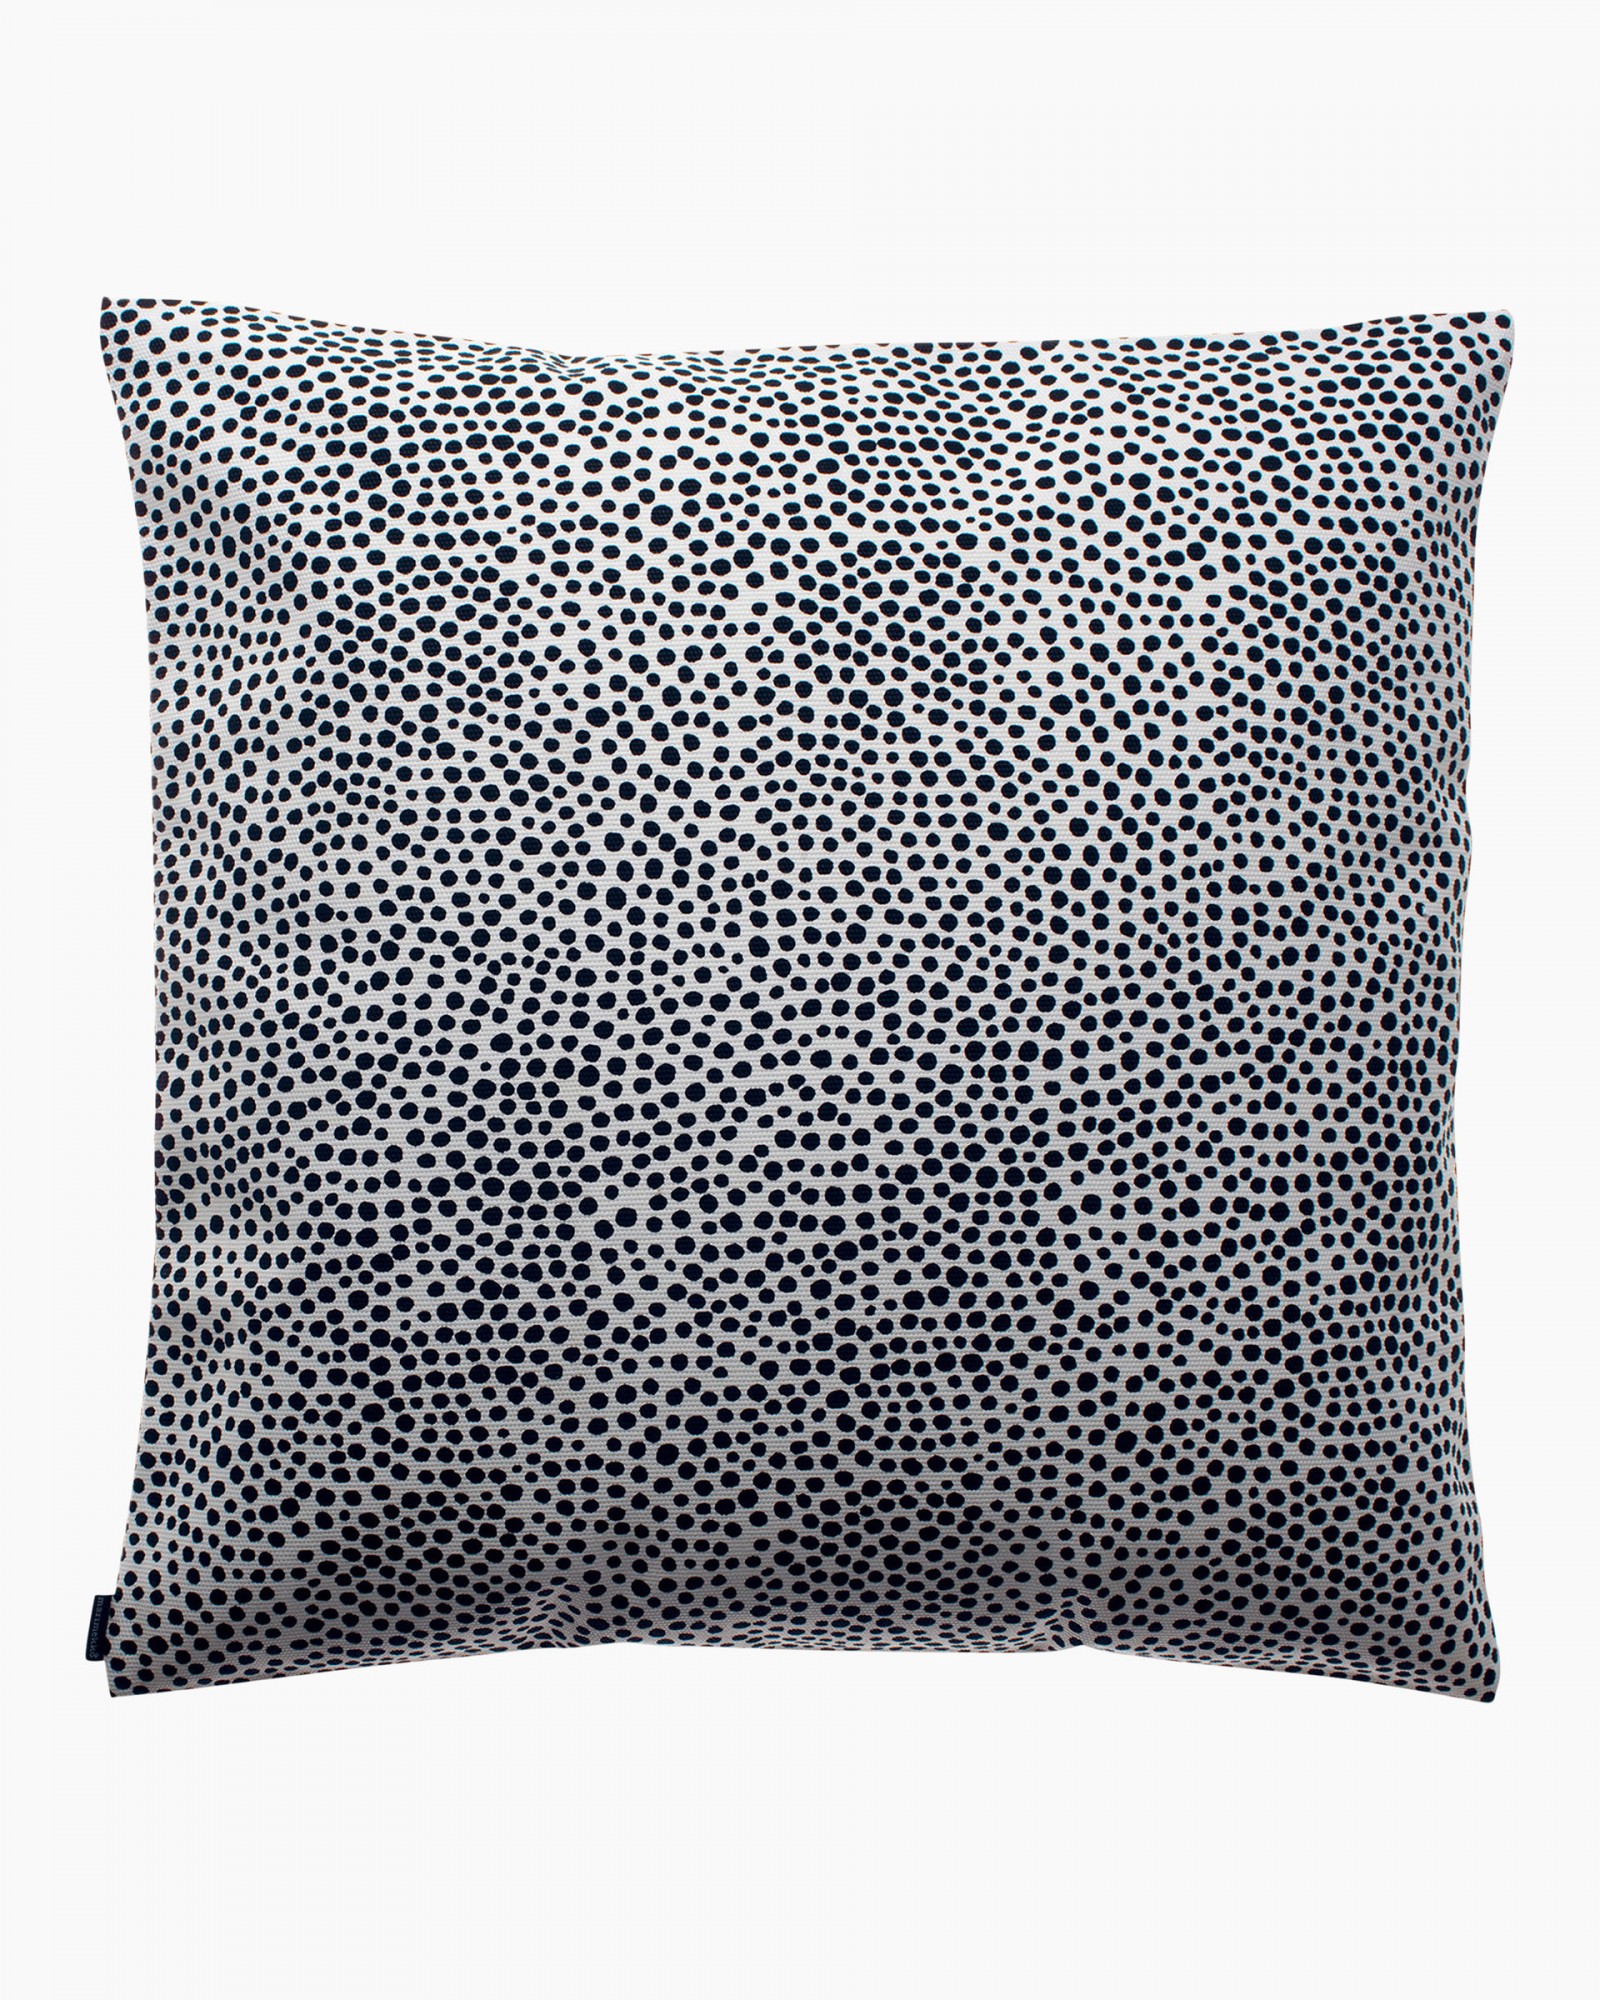 Pirput Parput cushion cover 50x50 cm